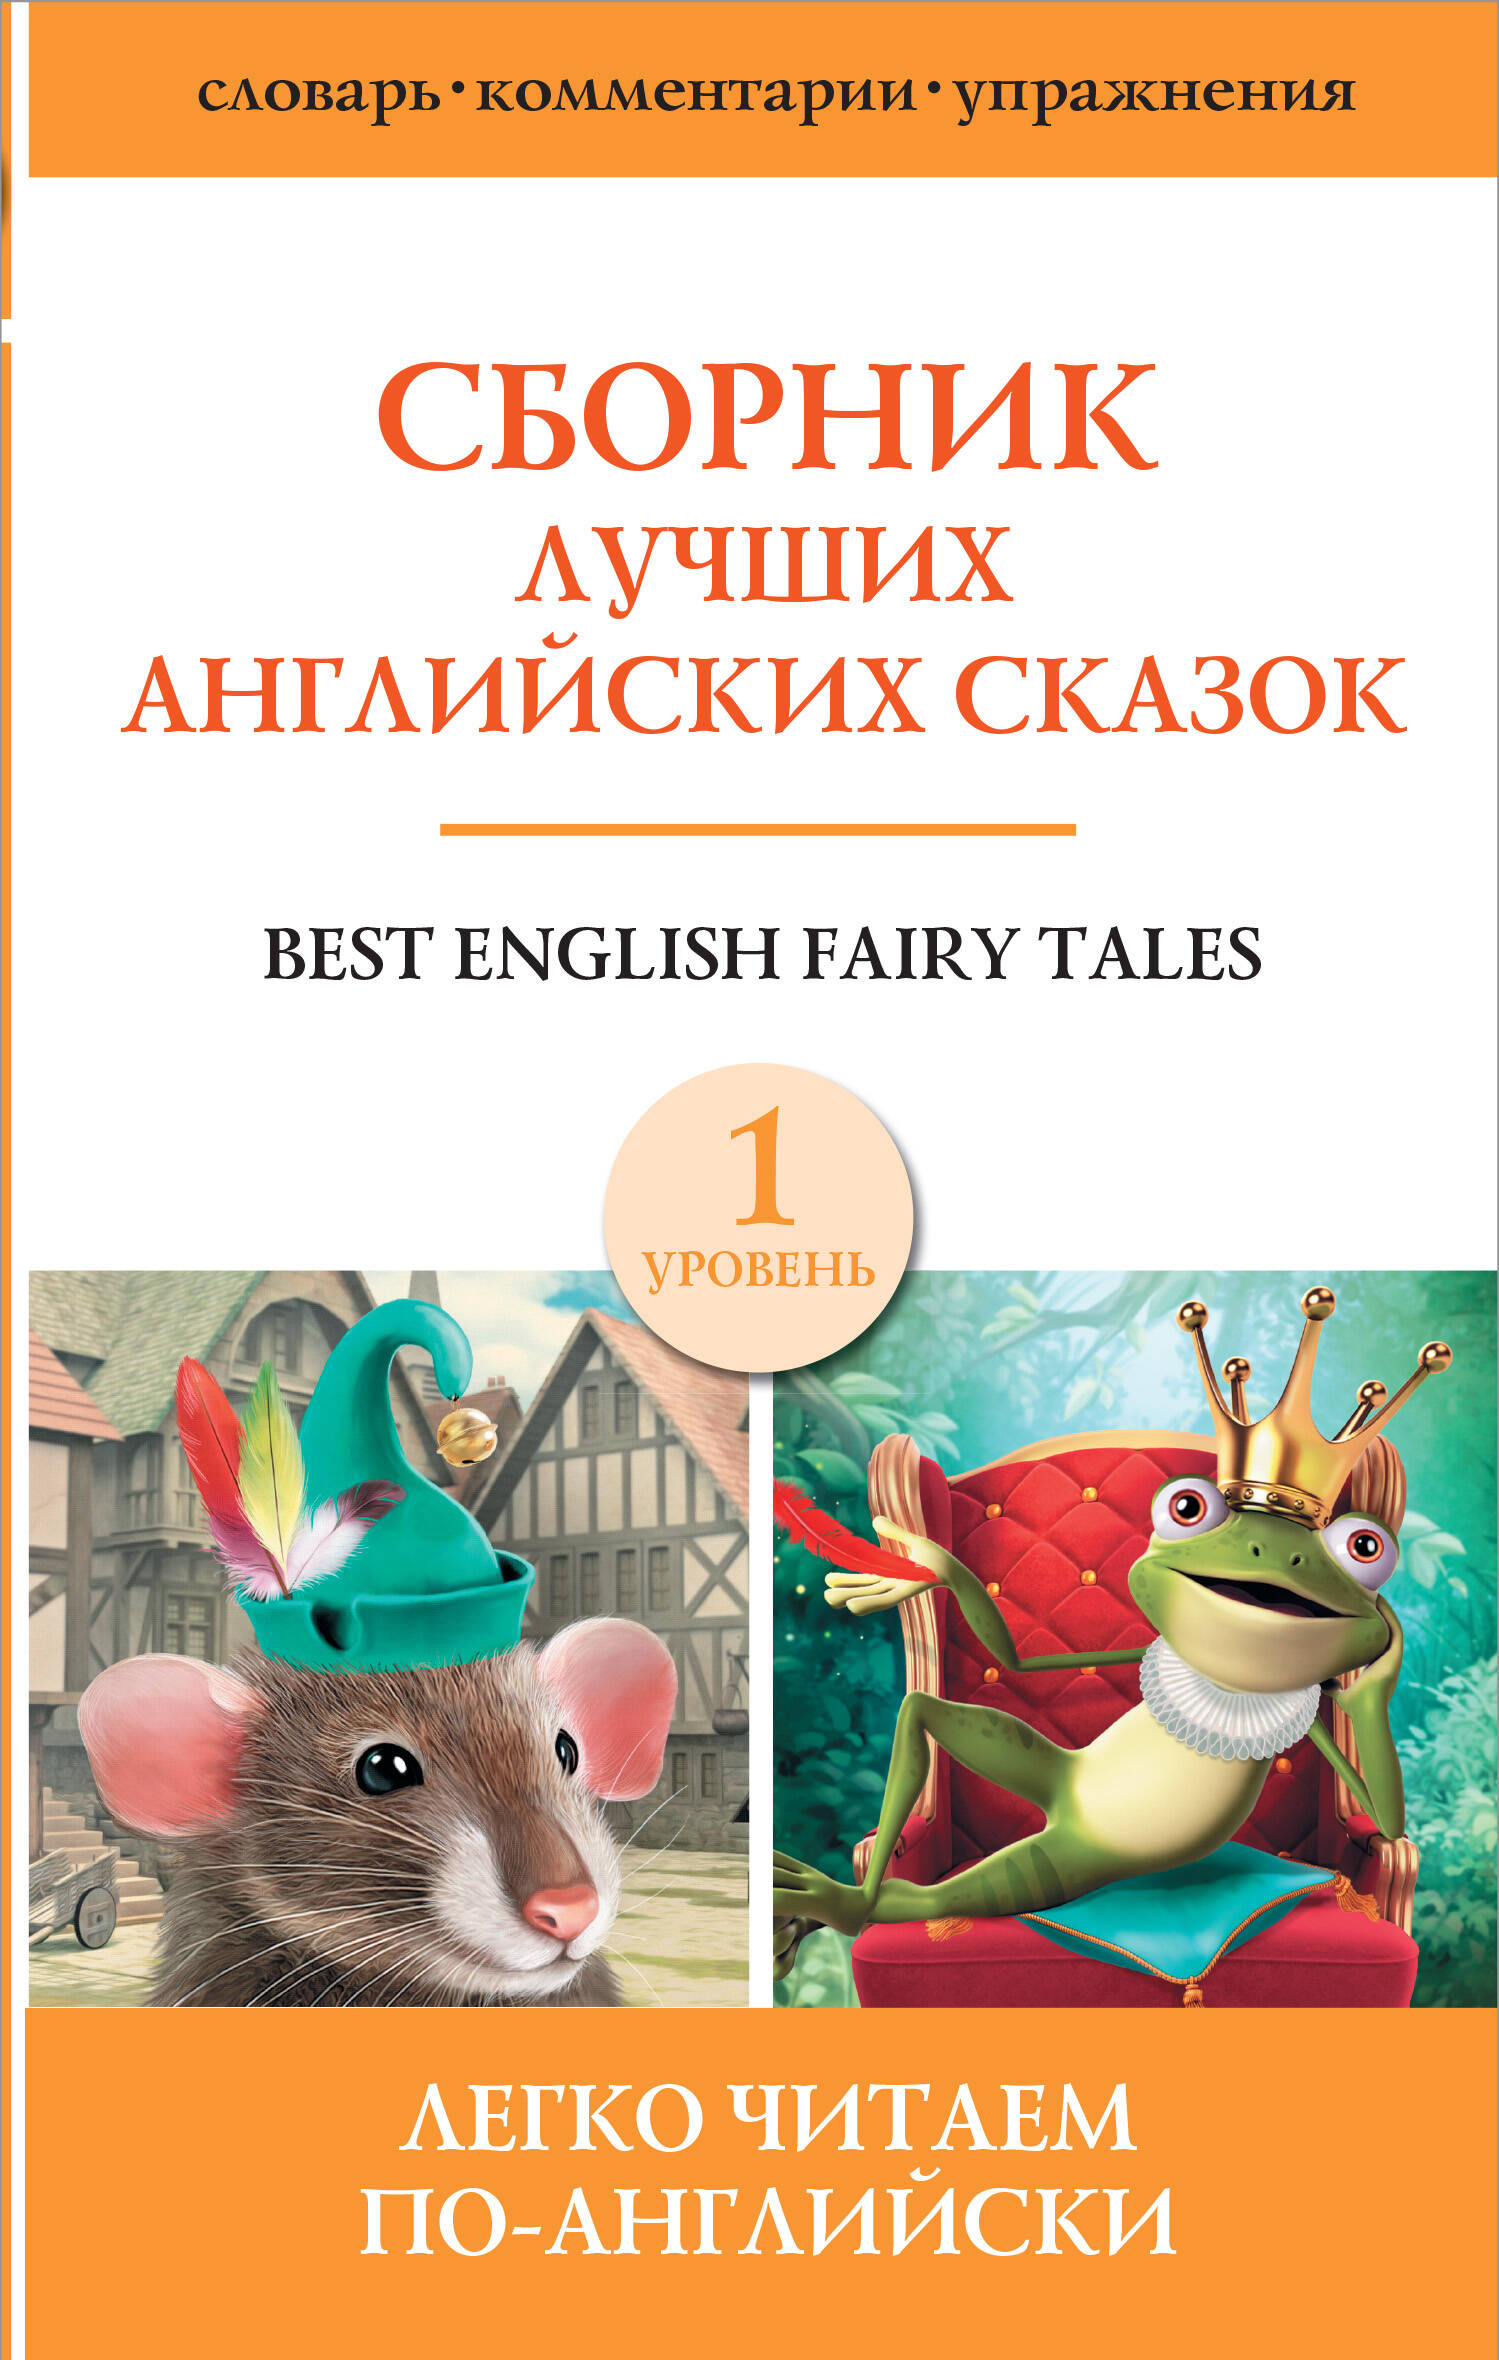 сборник лучших английских сказок уровень 1 Best english fairy tales / Сборник лучших английских сказок. Уровень 1